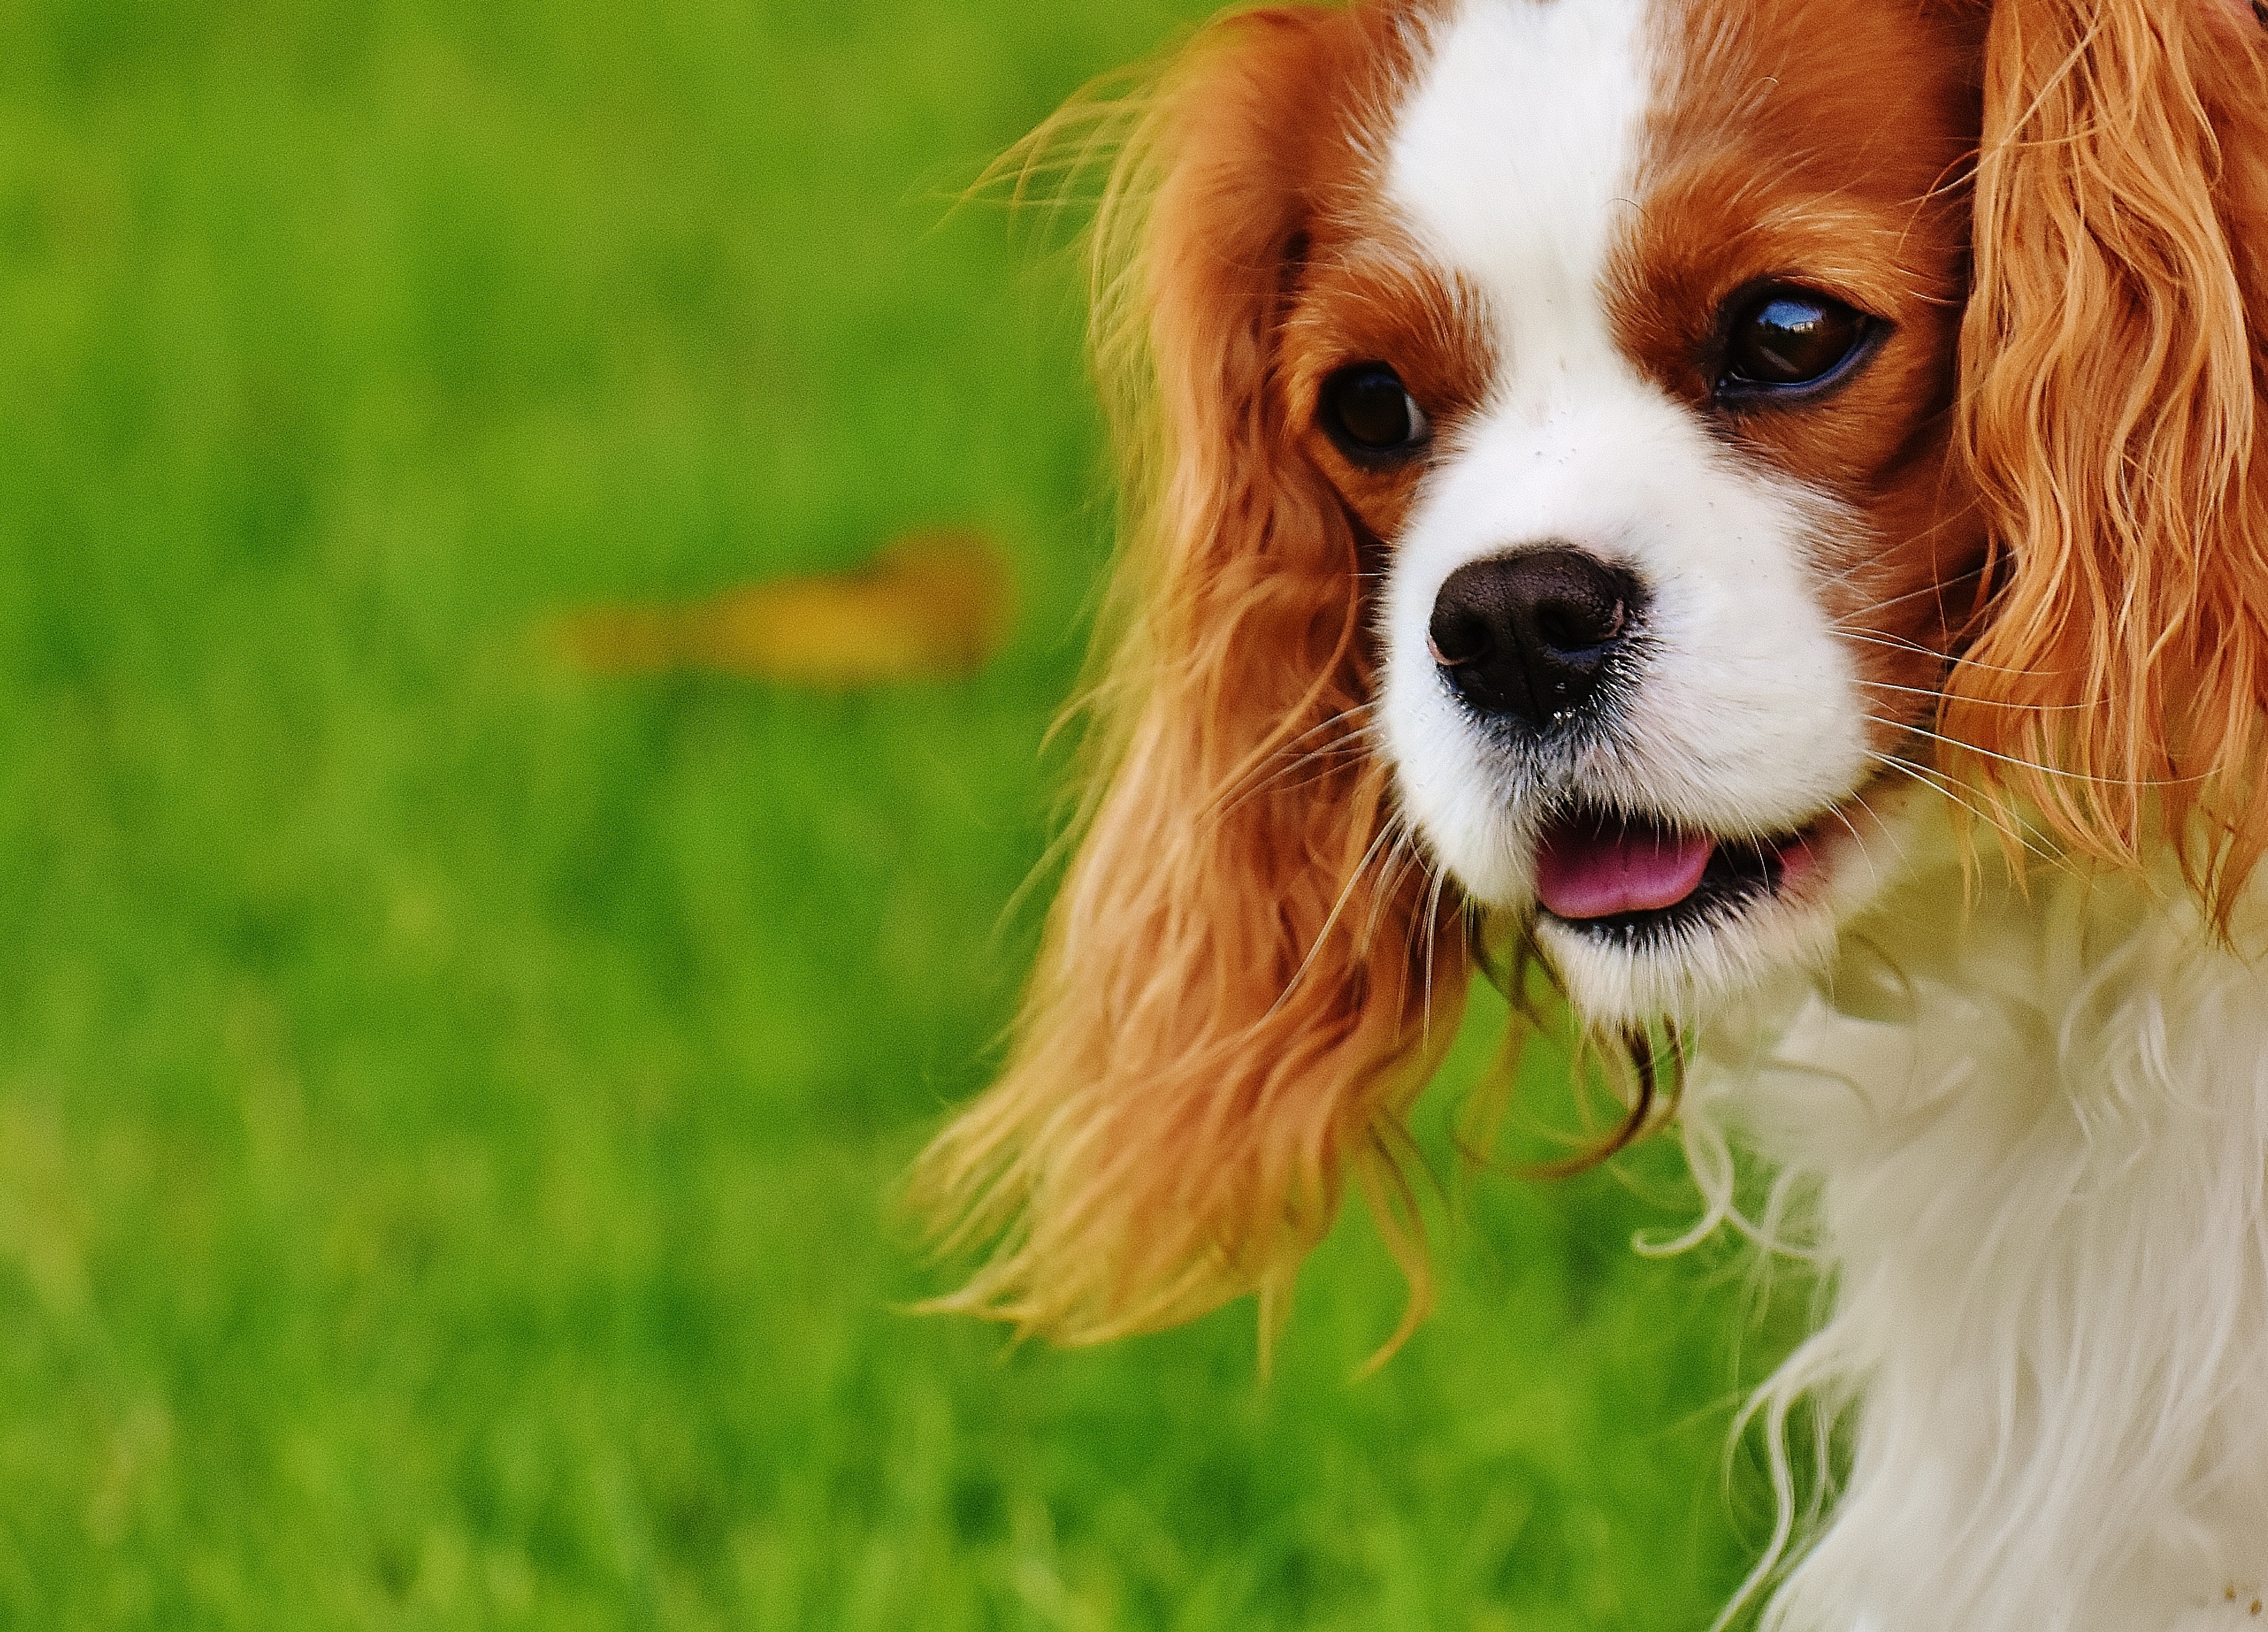 Allergie au chien: conseils pour la surmonter - Gublog | Gudog FR blog